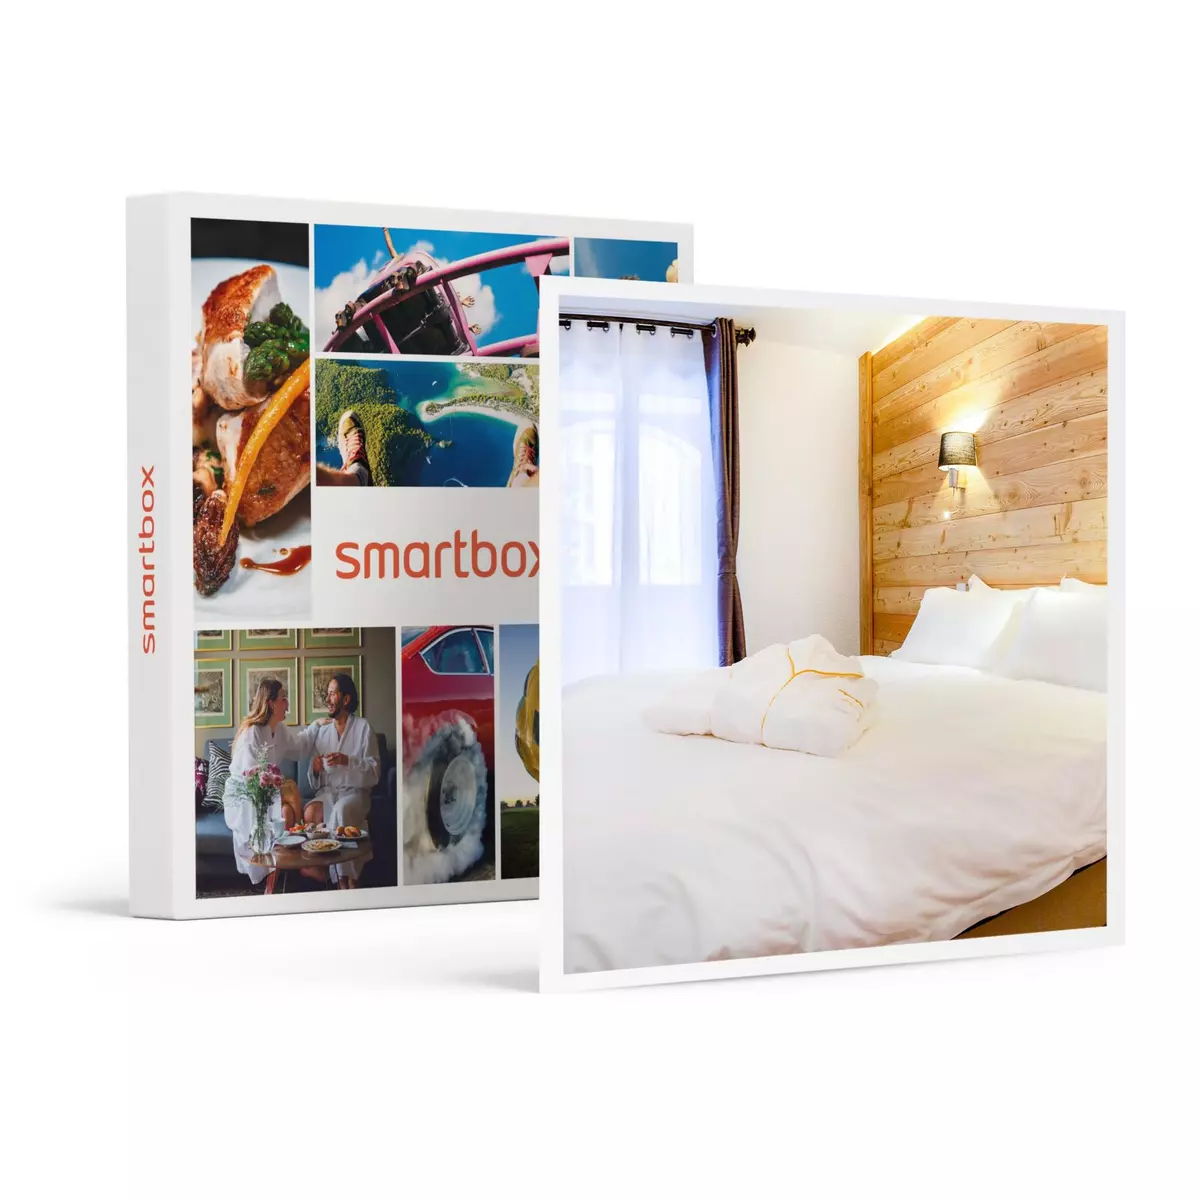 Smartbox 2 jours à Risoul en 4* avec modelage d'1h et accès illimité au sauna - Coffret Cadeau Séjour